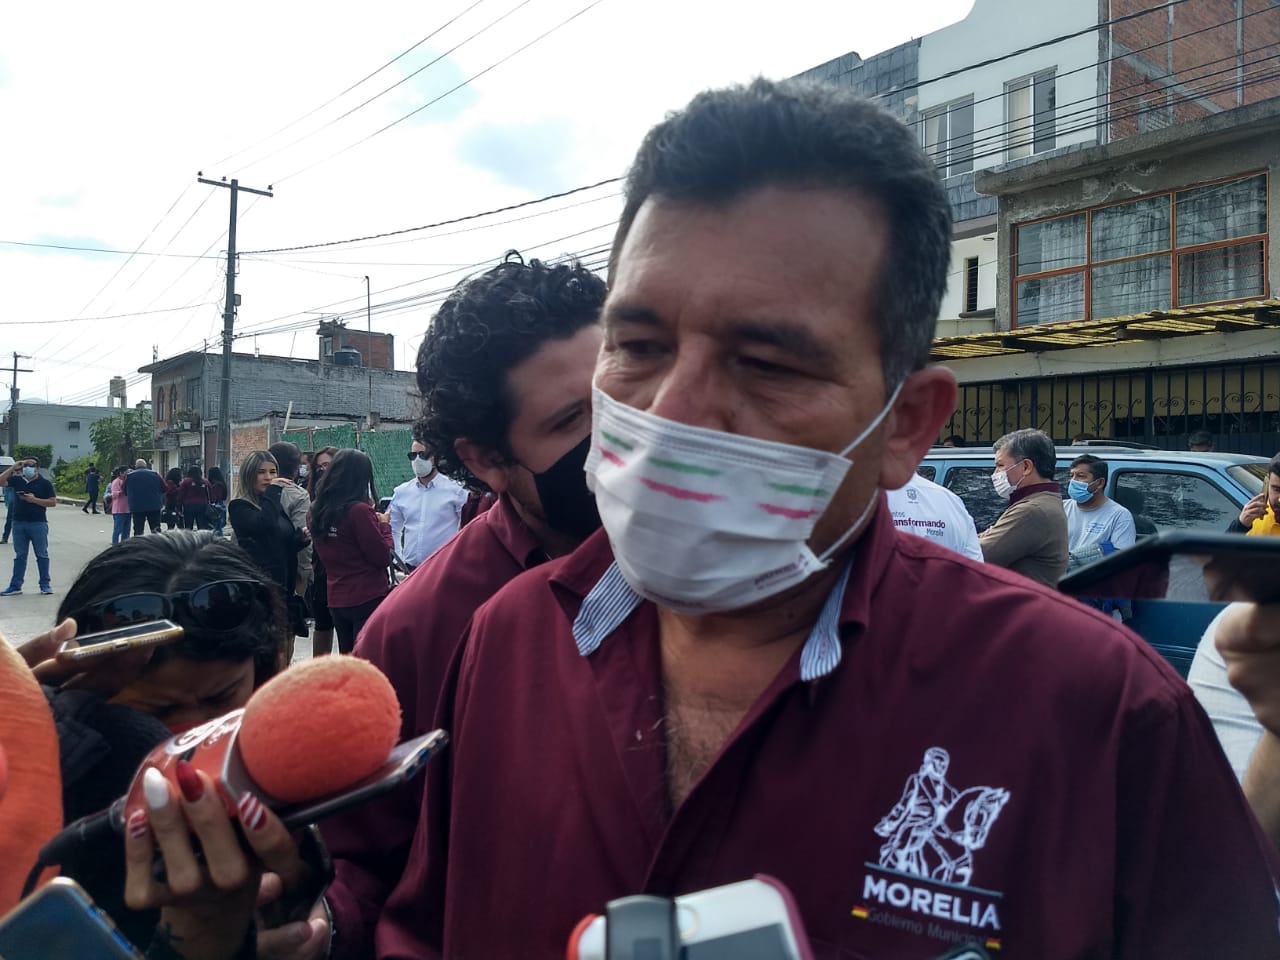 Llegaría en febrero vacuna anticovid a Morelia señalan autoridades municipales